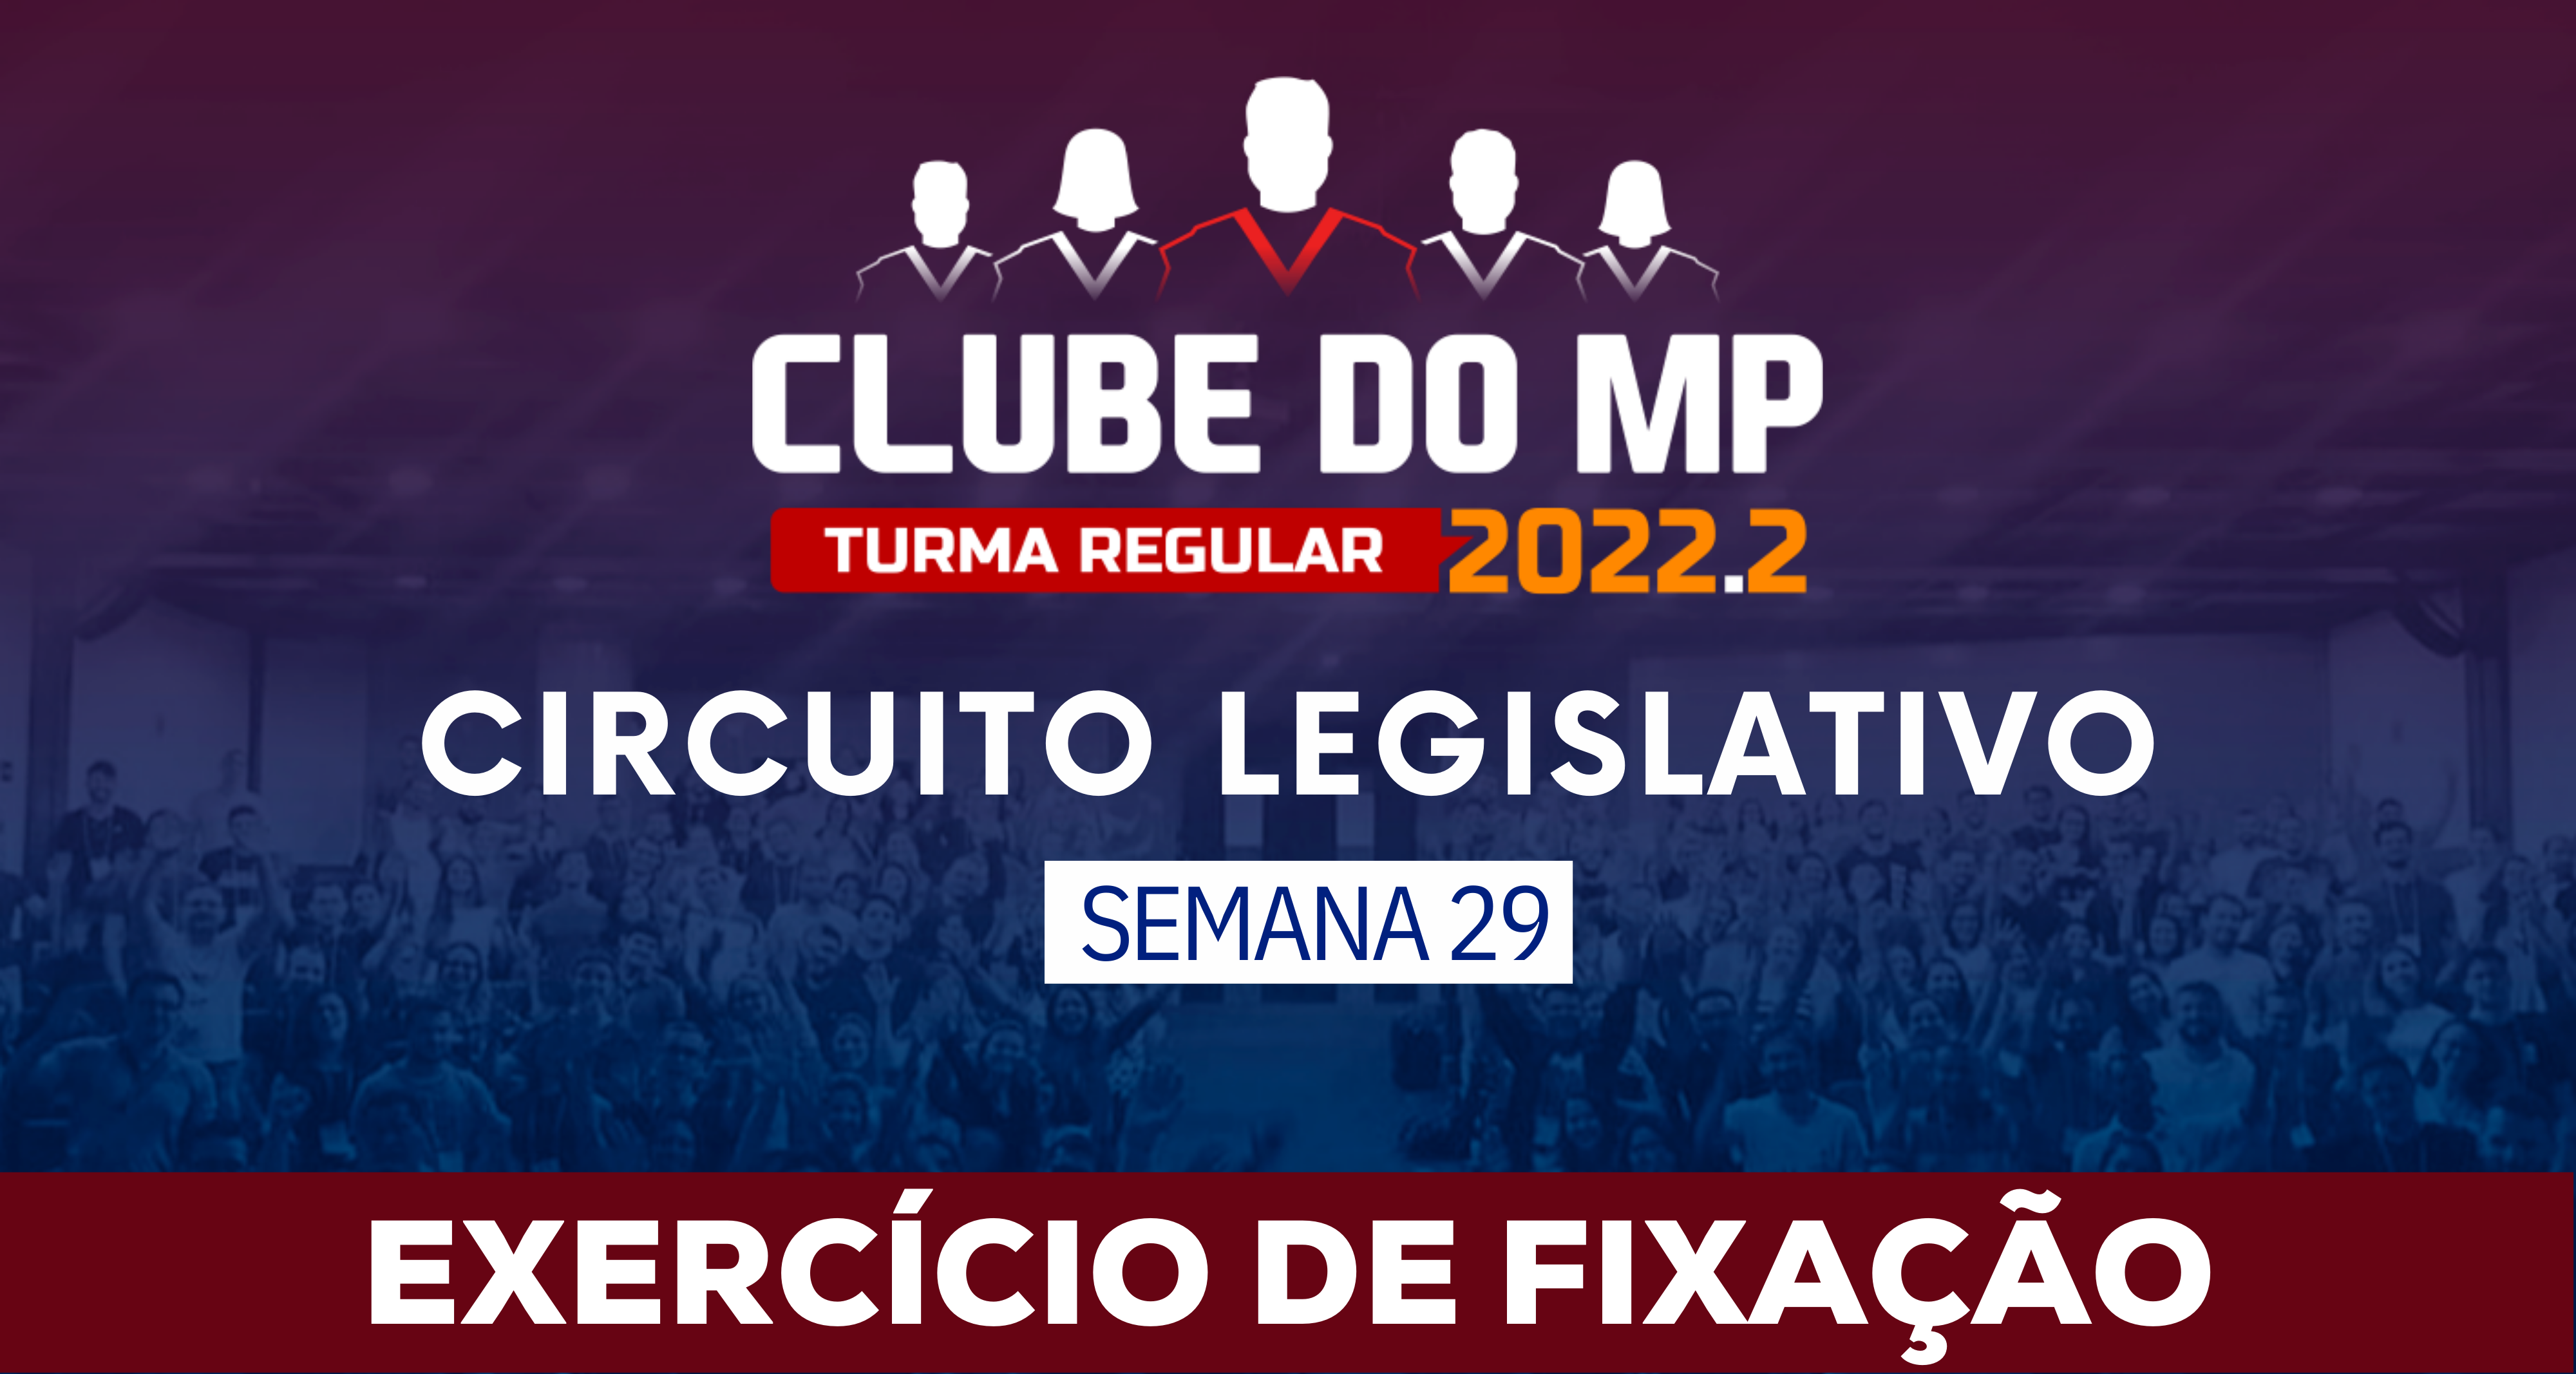 Circuito Legislativo 2022.2 (Clube do MP - Semana 29)